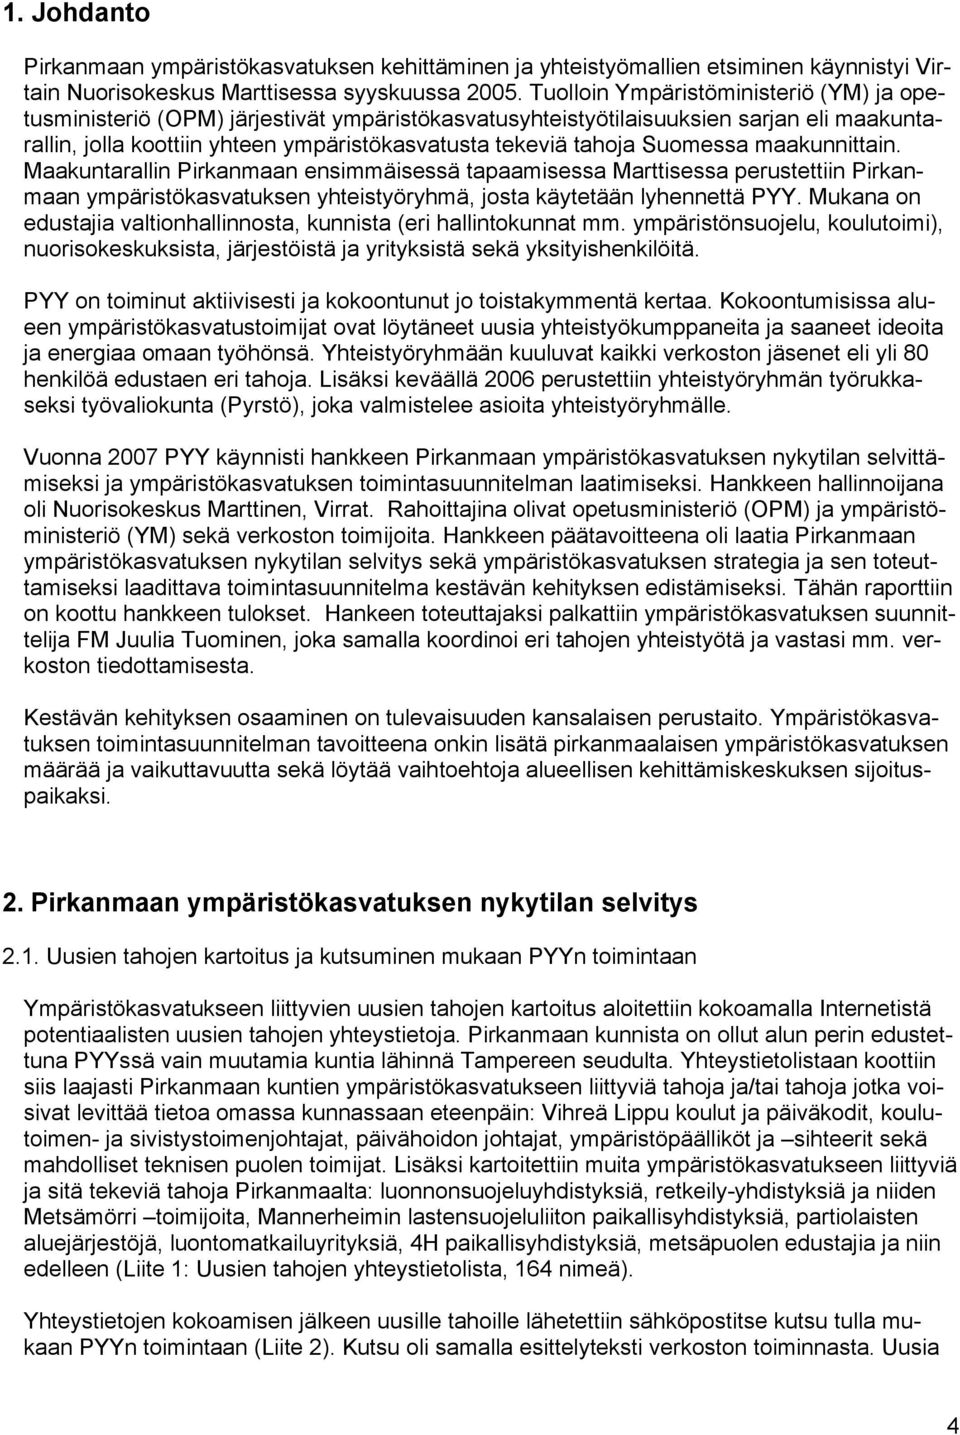 Suomessa maakunnittain. Maakuntarallin Pirkanmaan ensimmäisessä tapaamisessa Marttisessa perustettiin Pirkanmaan ympäristökasvatuksen yhteistyöryhmä, josta käytetään lyhennettä PYY.